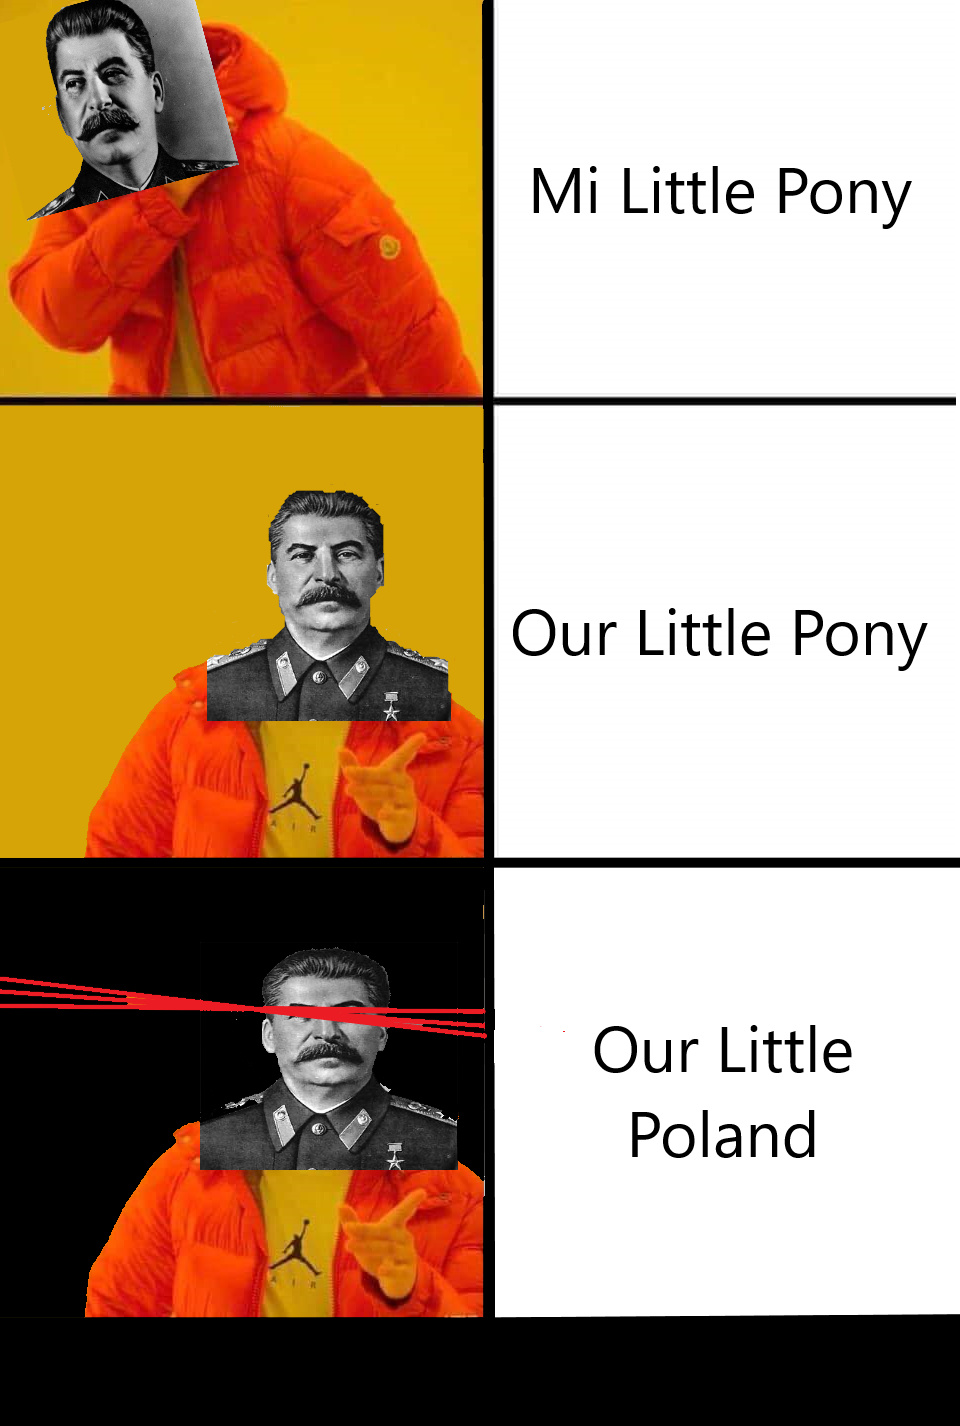 Stalin aproves - meme